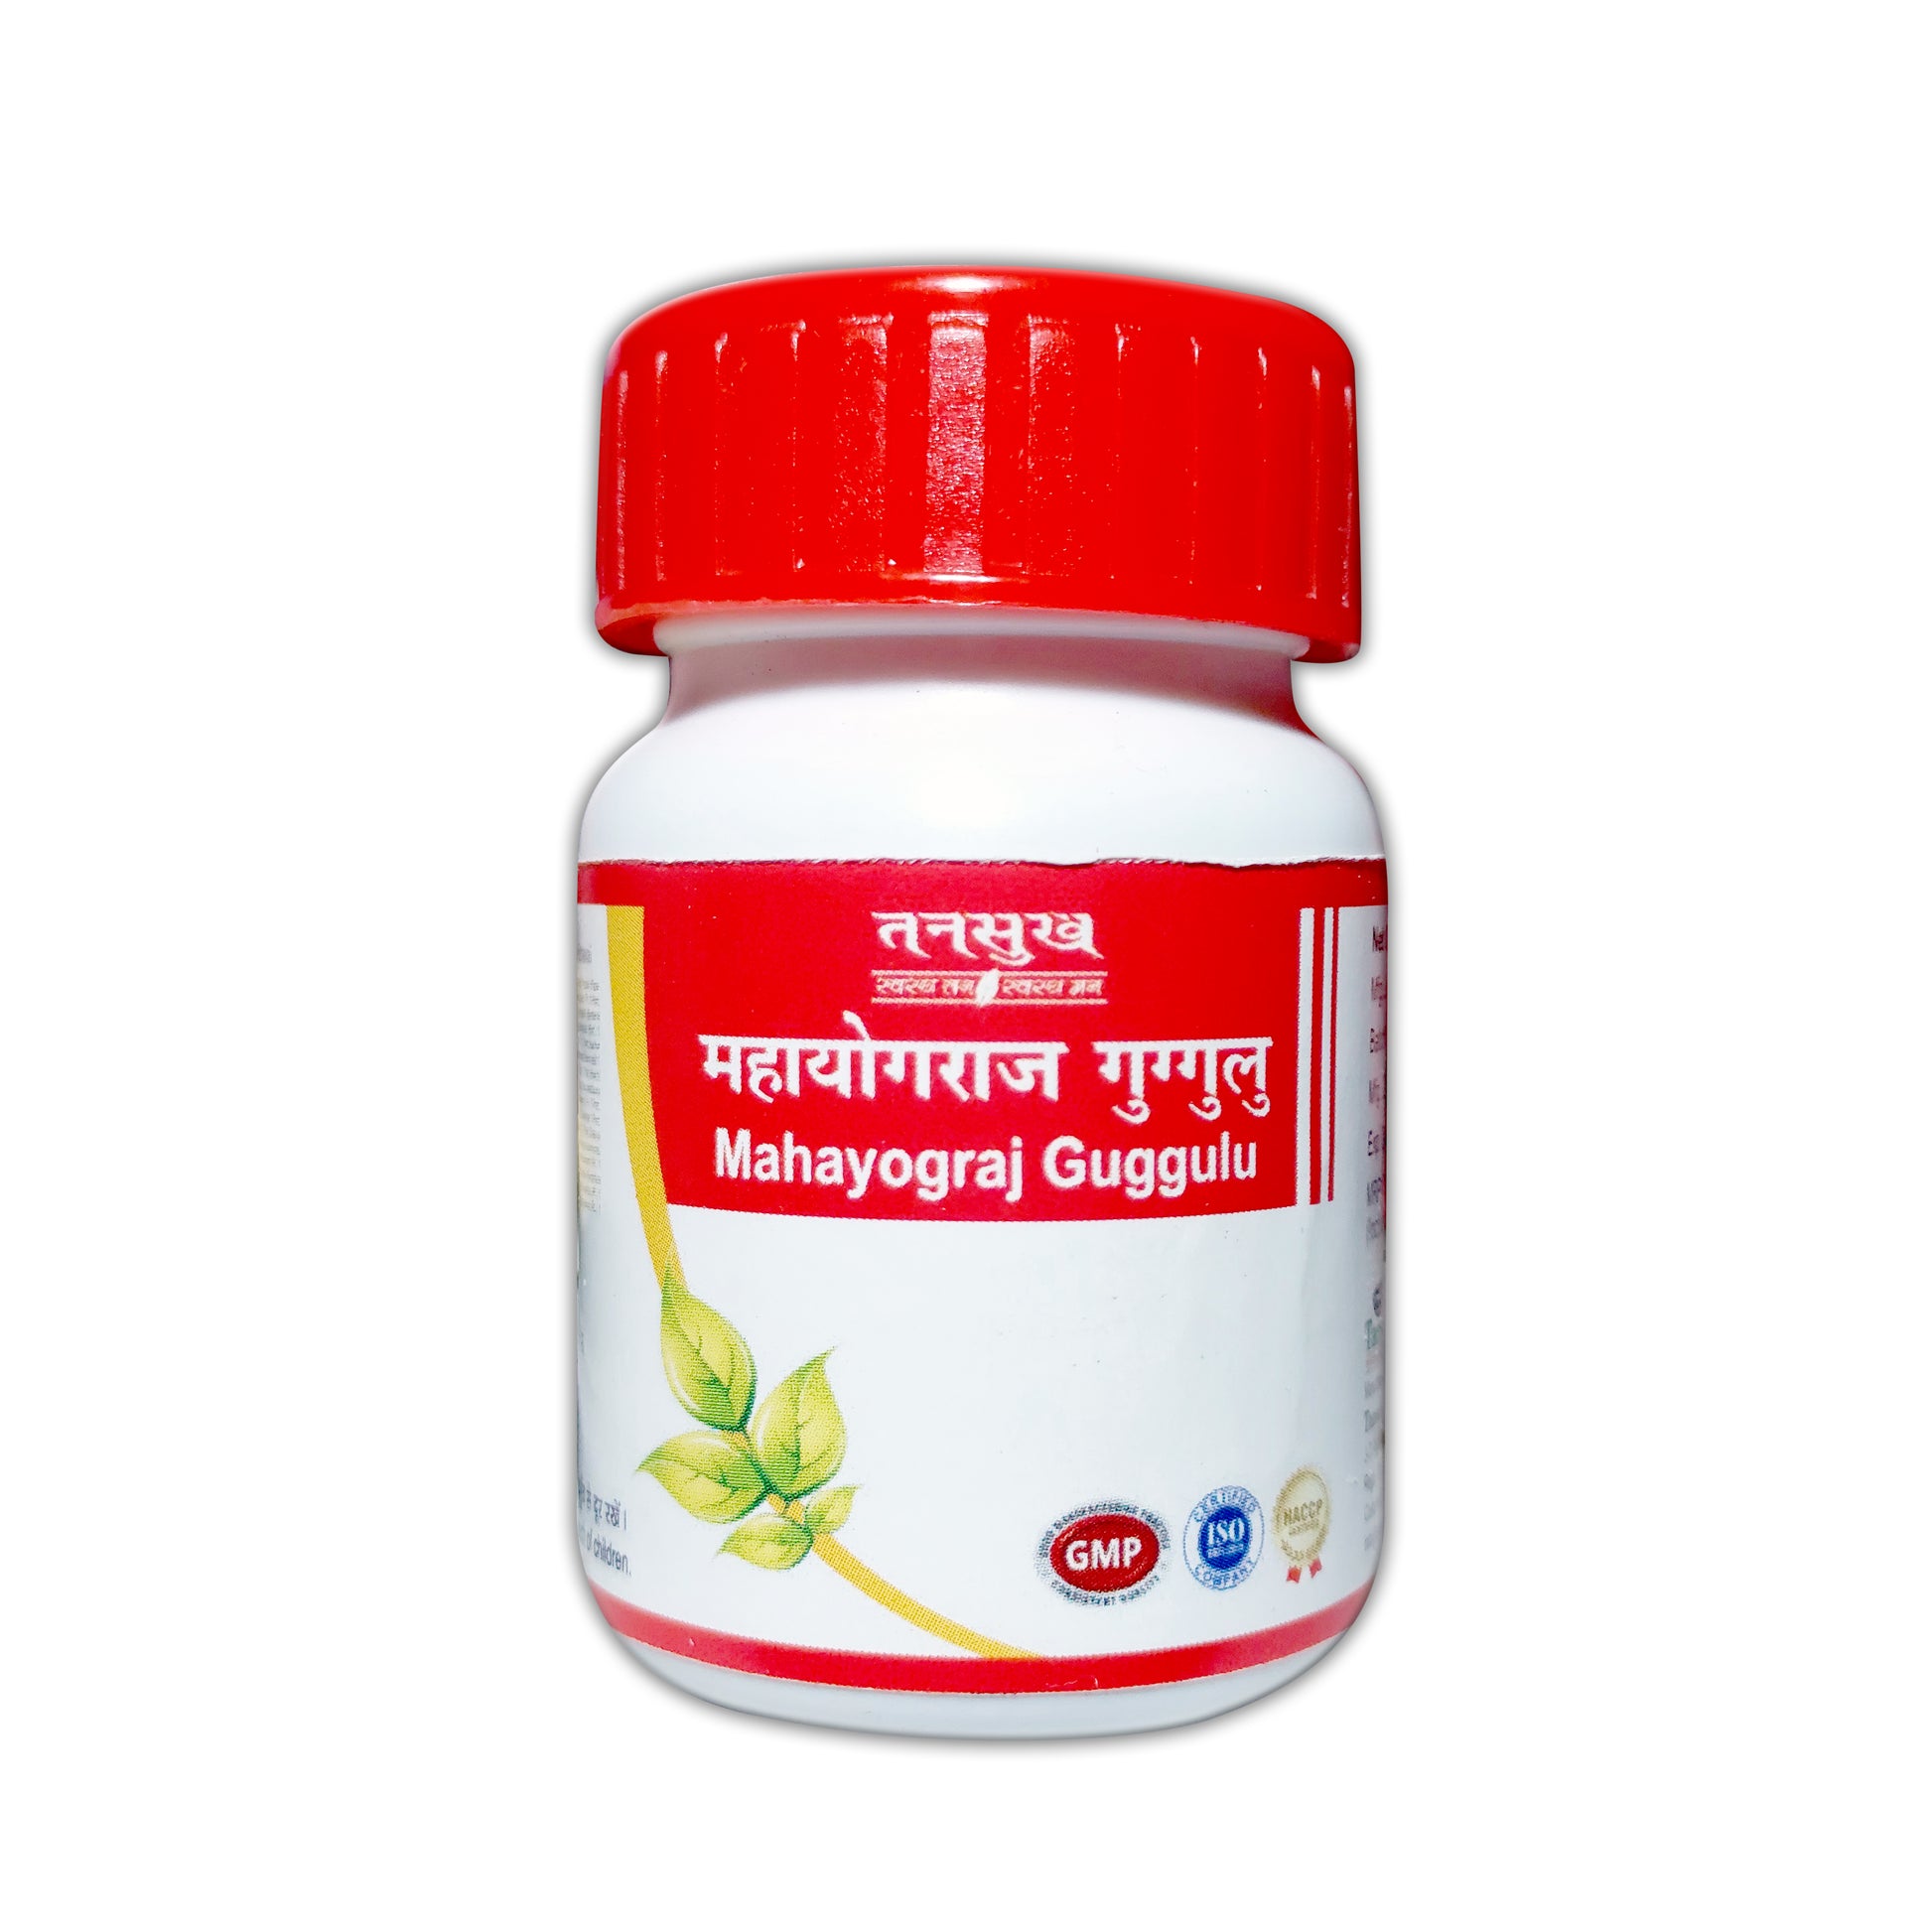 Tansukh Mahayograj Guggulu Herbal Natural Ayurvedic Medicine Bones Pains Joint Arthritis Sciatica